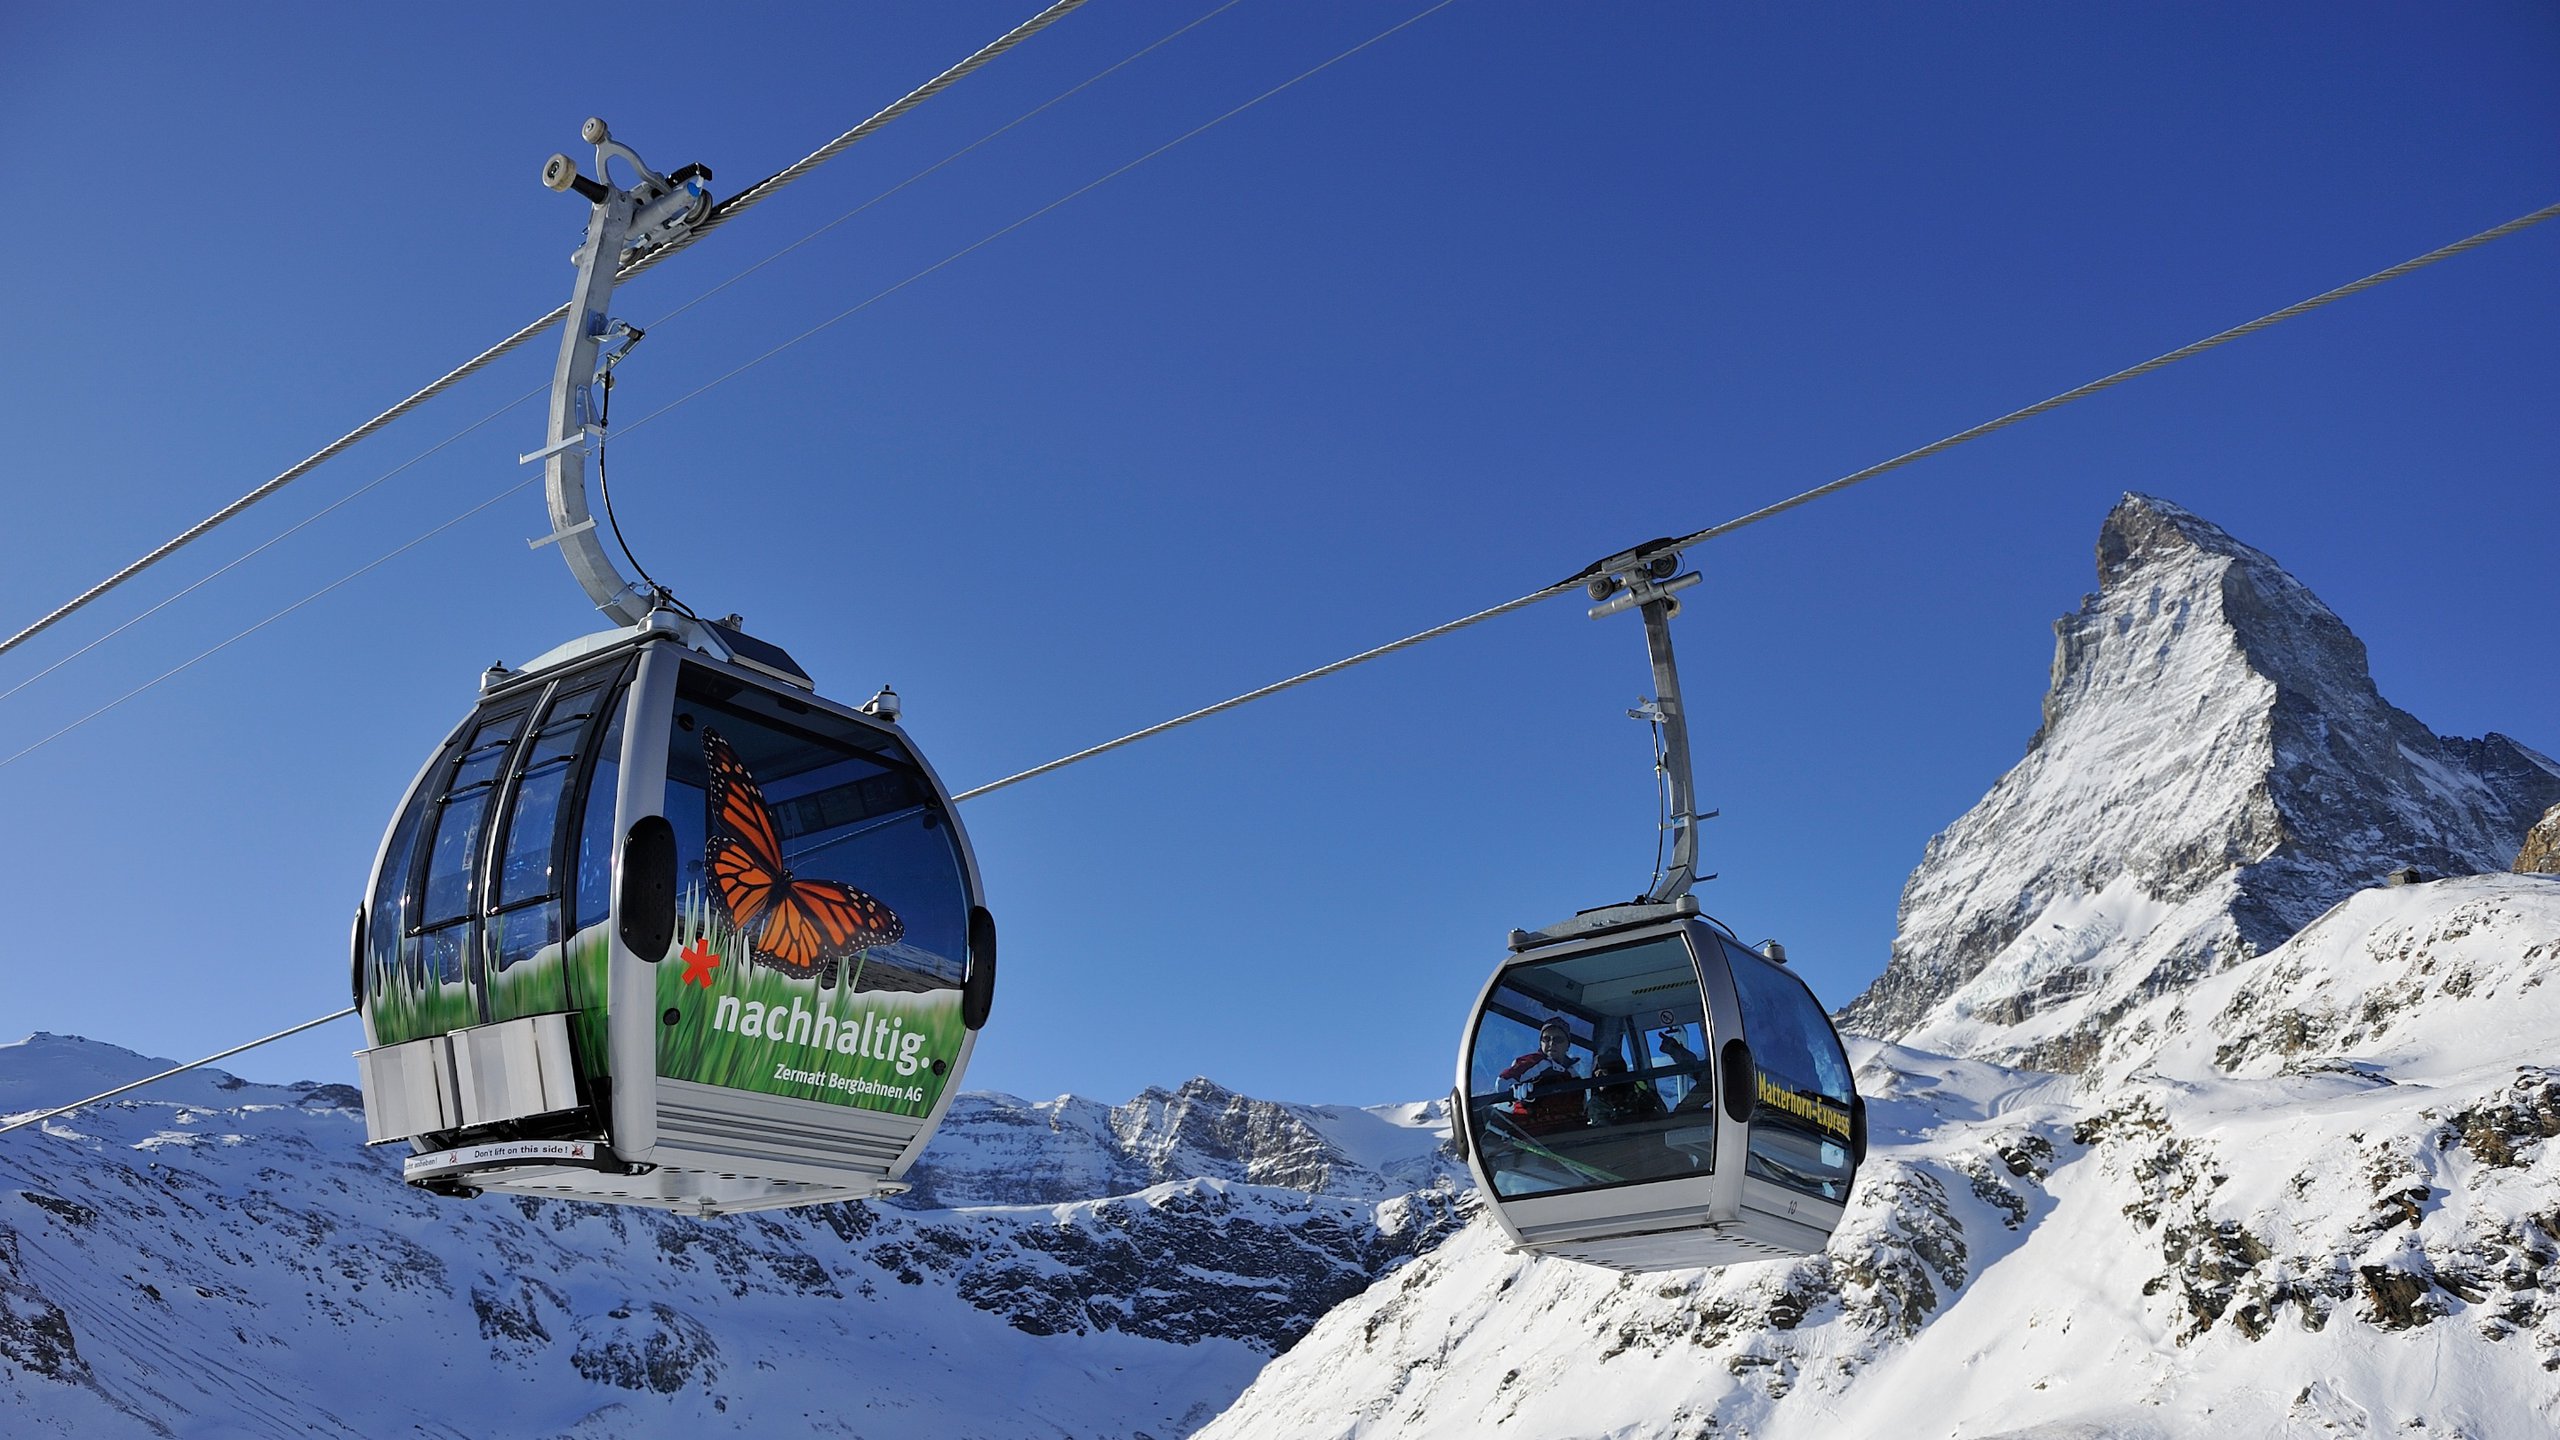 Klein Matterhorn cable car